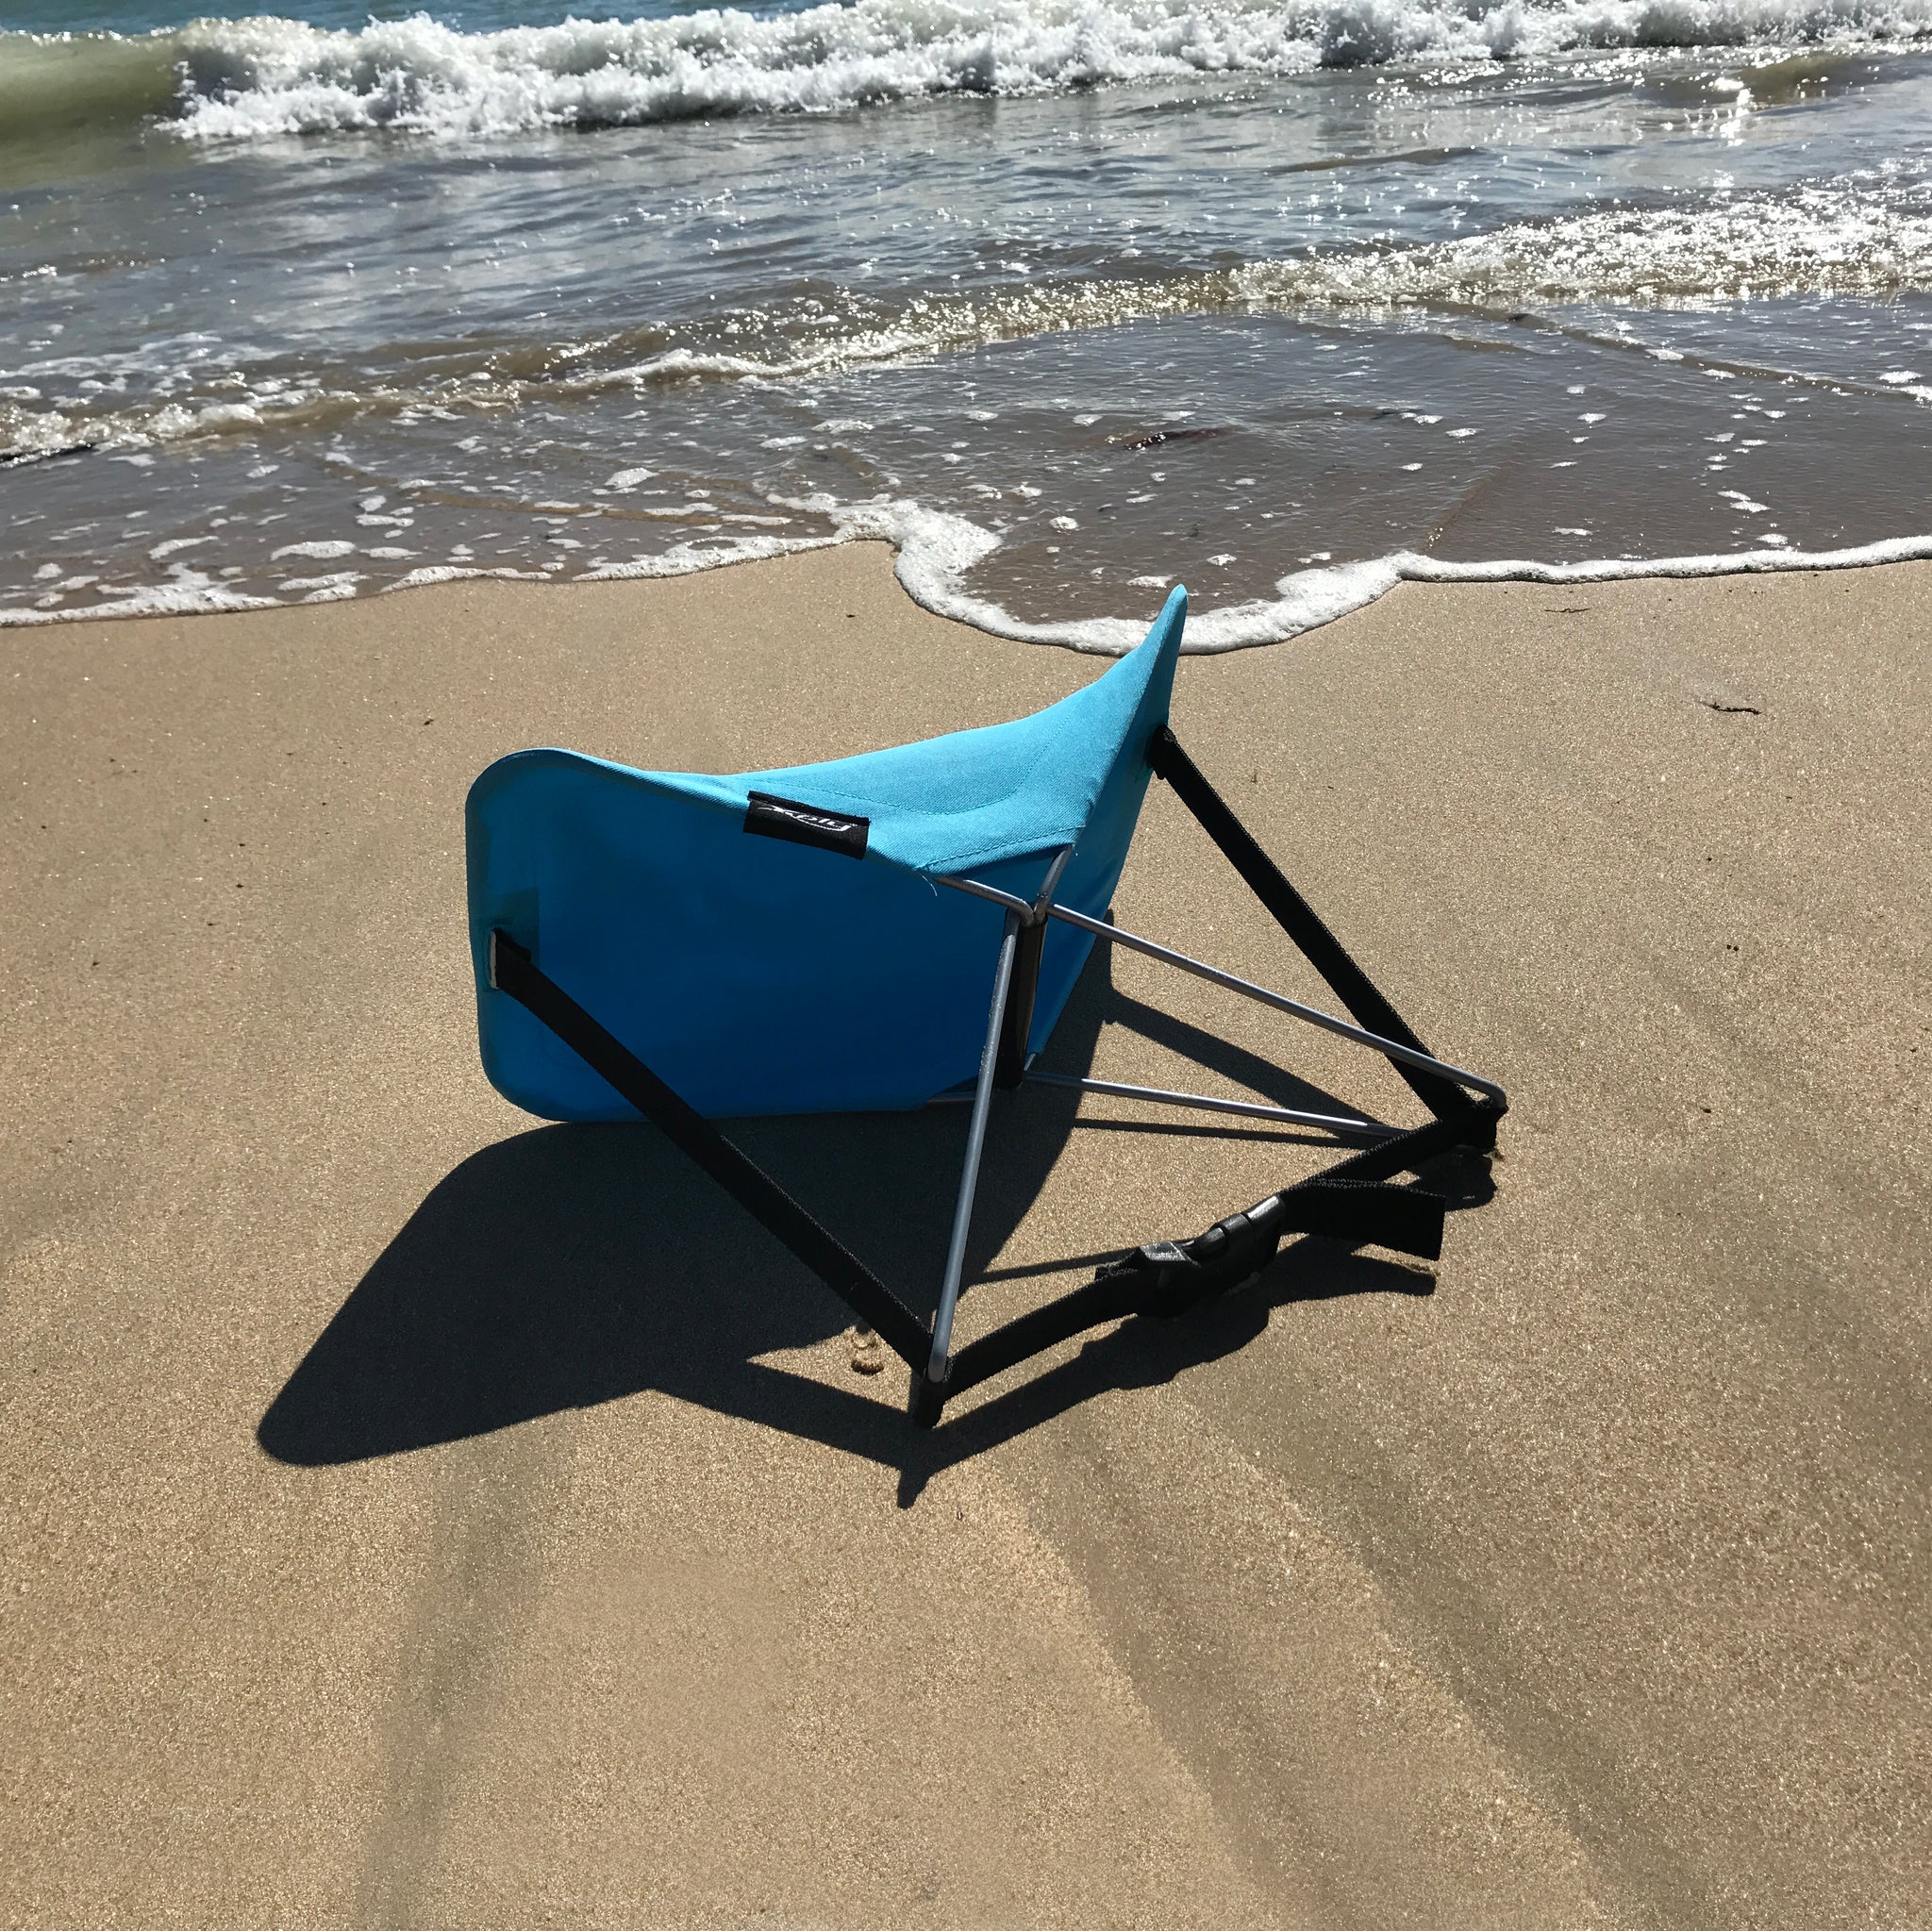 Y-ply • Opvouwbaar Strandstoeltje • Beach Lounger • Y-Ply is de ideale metgezel om te relaxen aan het strand of in het park. Gebruik hem als ondersteuning voor je hoofd, rug, arm of voeten. Voor elke positie biedt hij veel comfort. Dit opvouwbare strandstoeltje is gemakkelijk mee te nemen in de bijgeleverde tas.